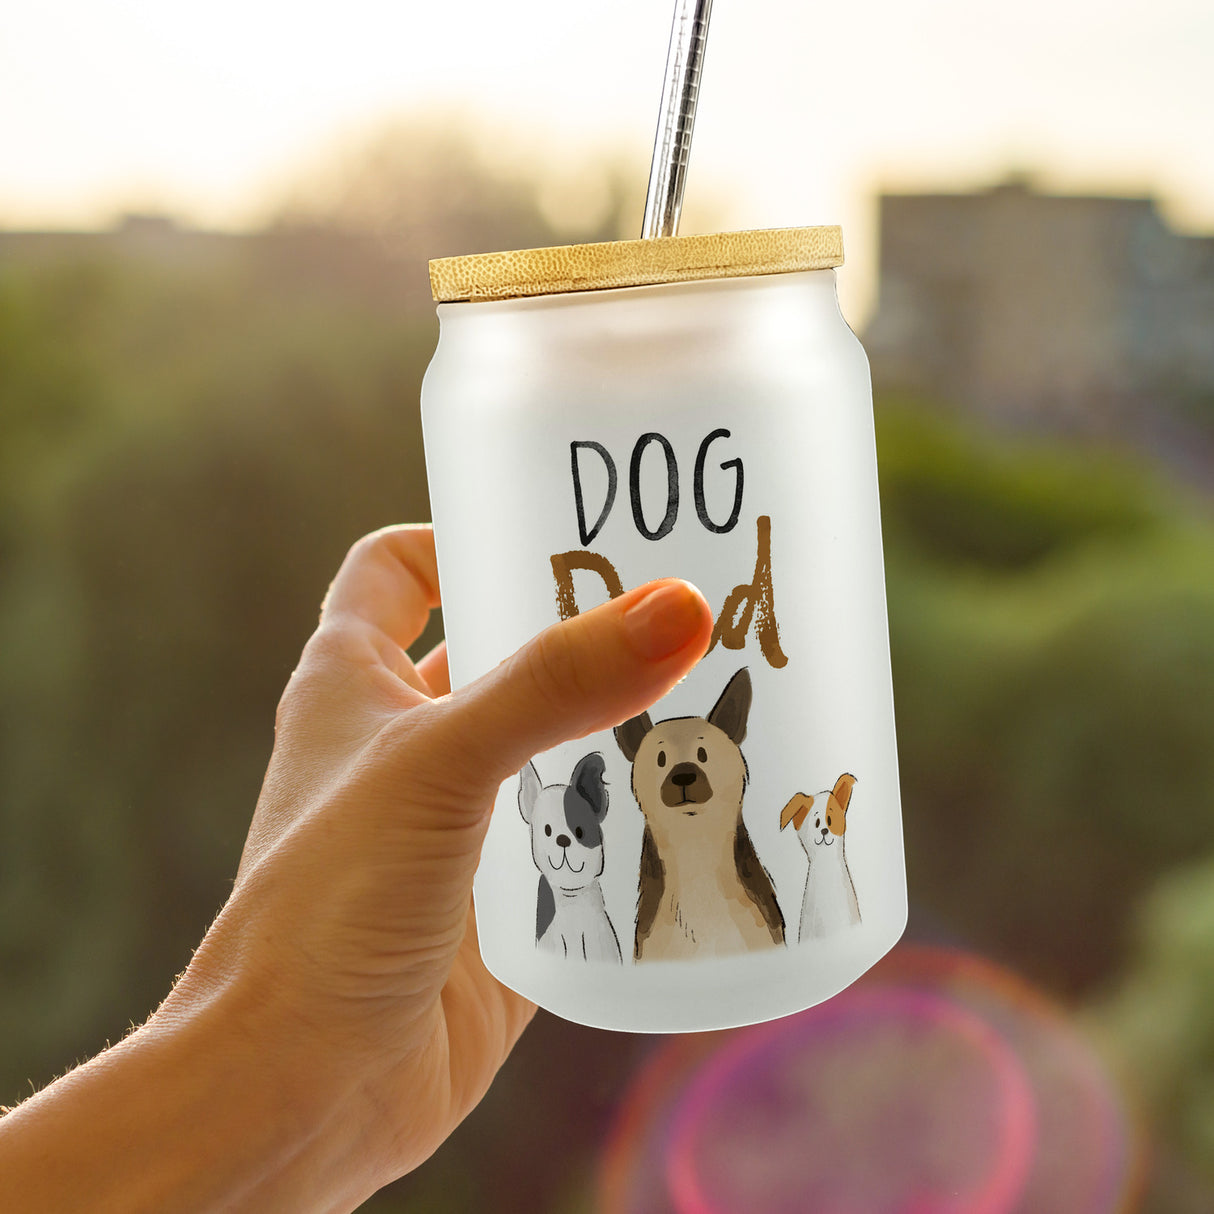 Dog Dad Trinkglas mit Bambusdeckel mit Spruch